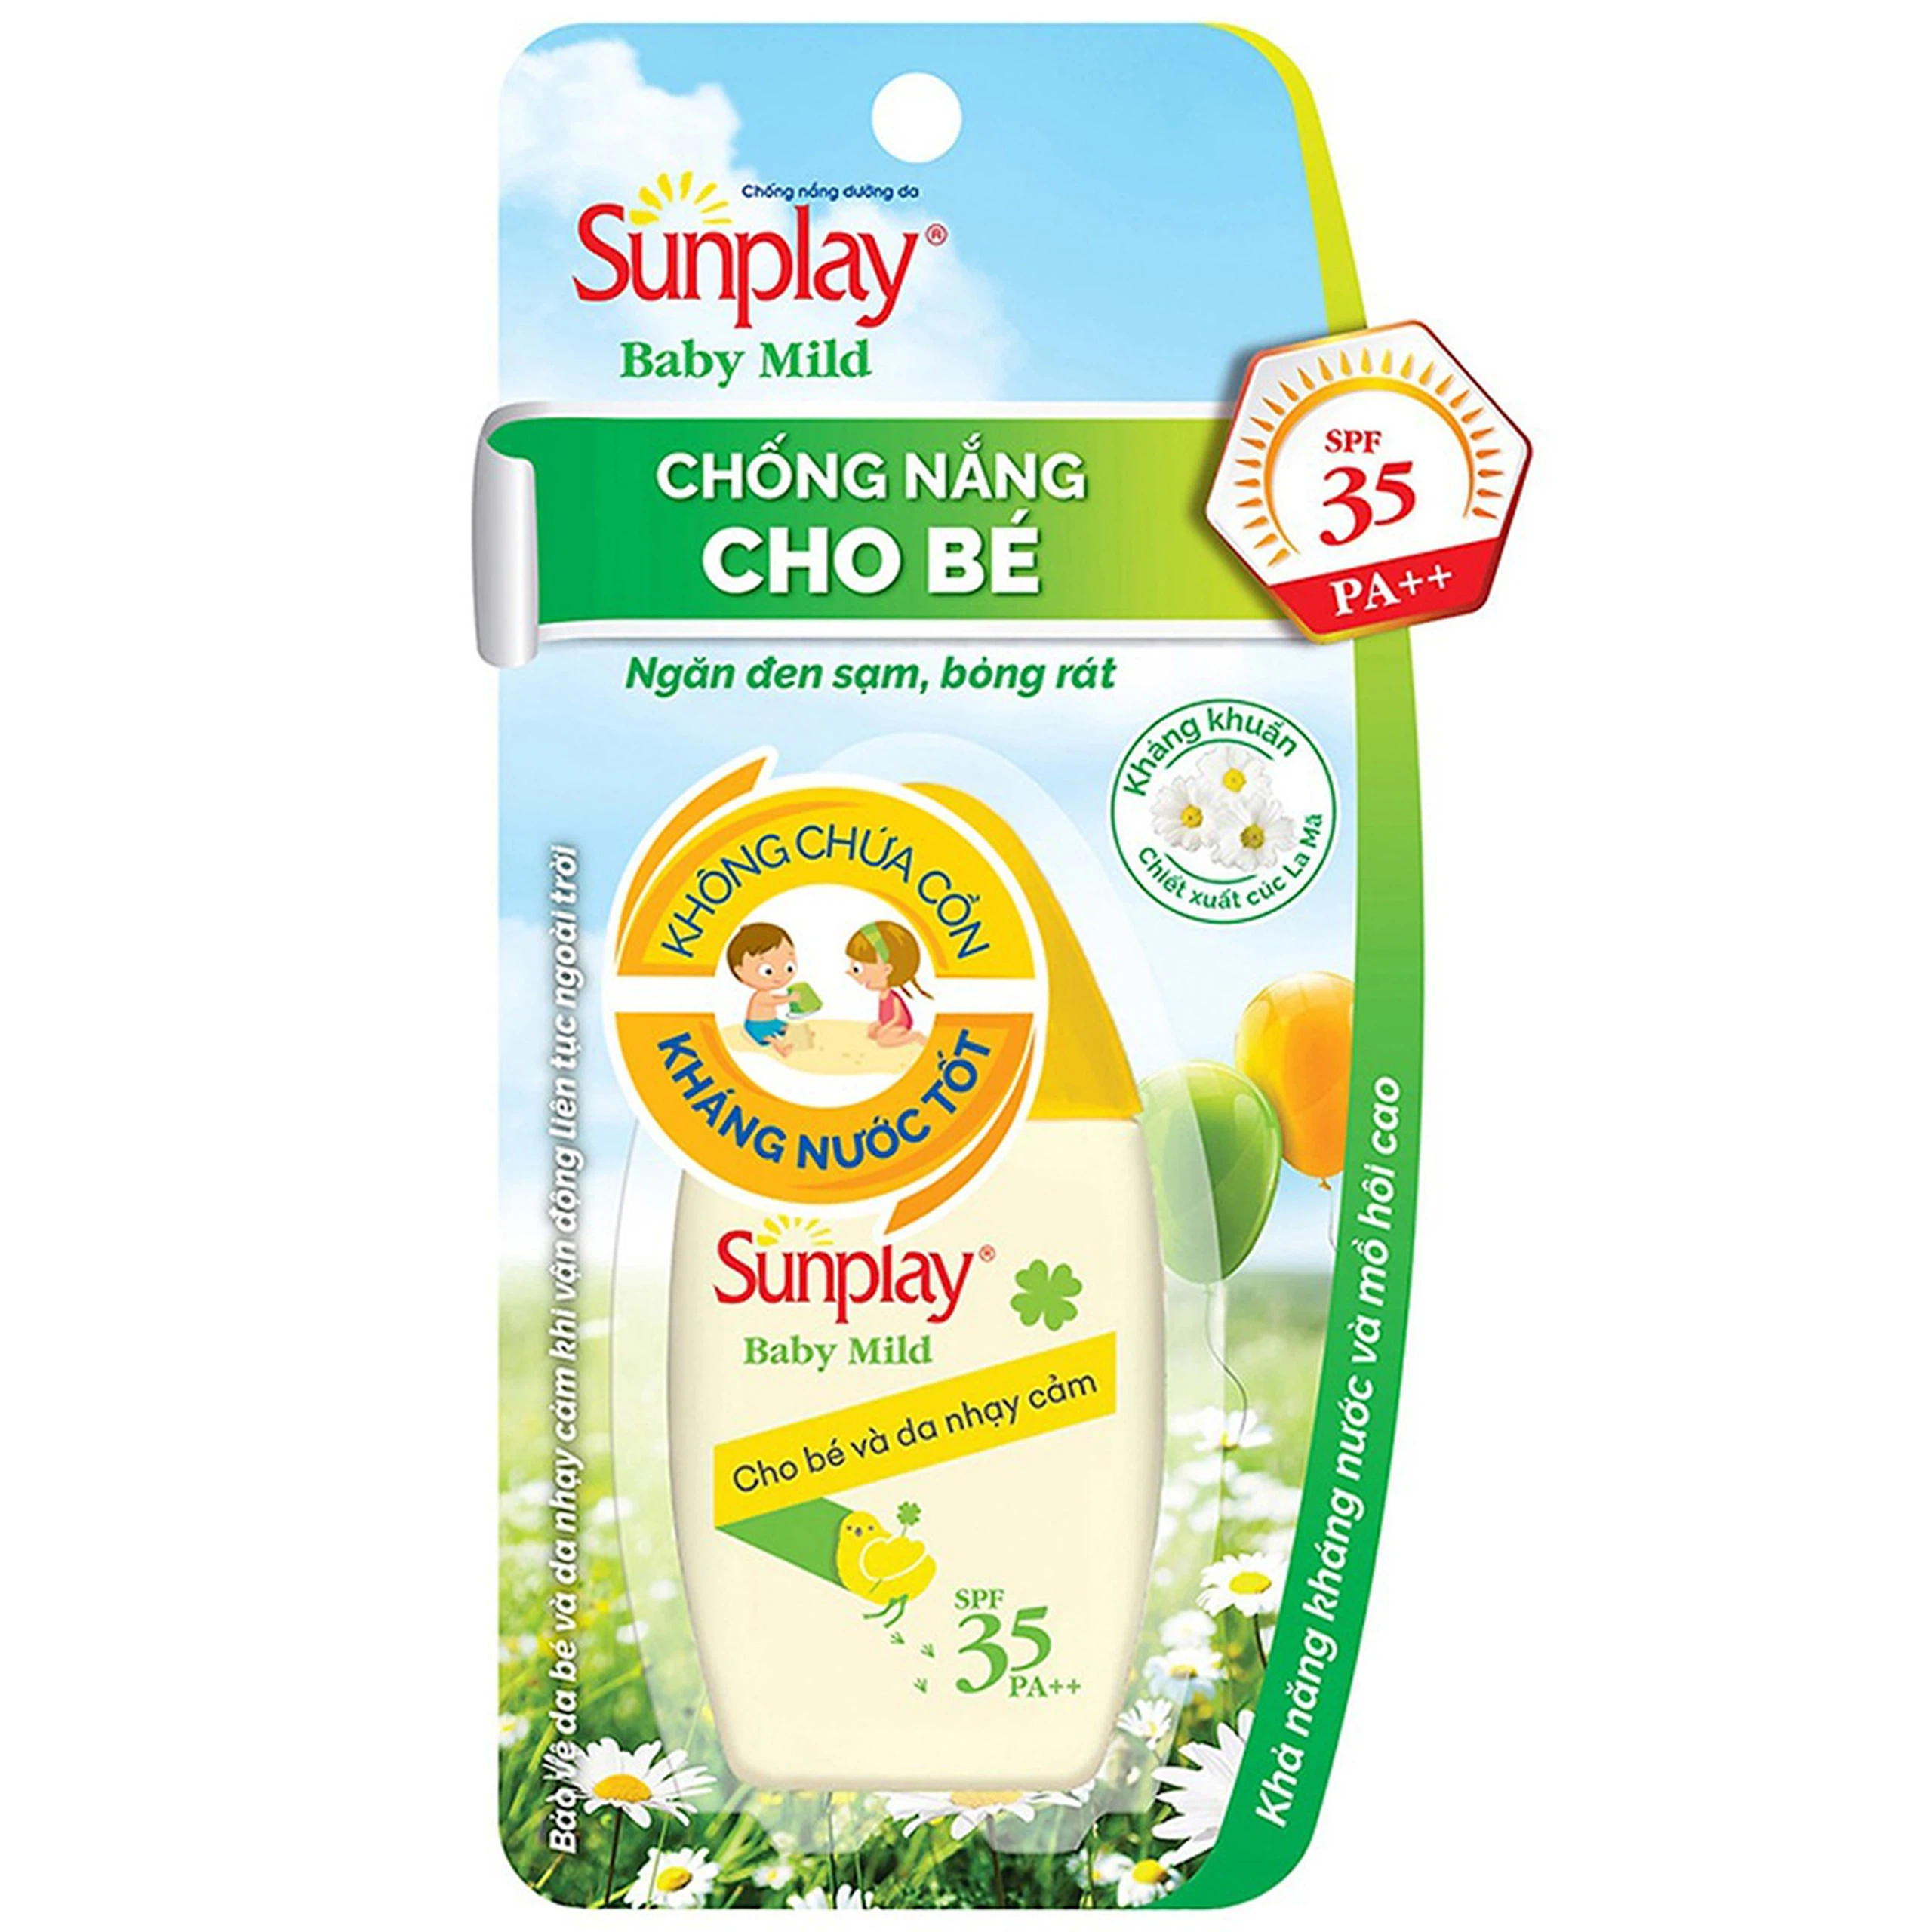 Sữa chống nắng cho bé Sunplay Baby Mild SPF35 PA++ Rohto ngăn đen sạm, bỏng rát cho da nhạy cảm (30g)